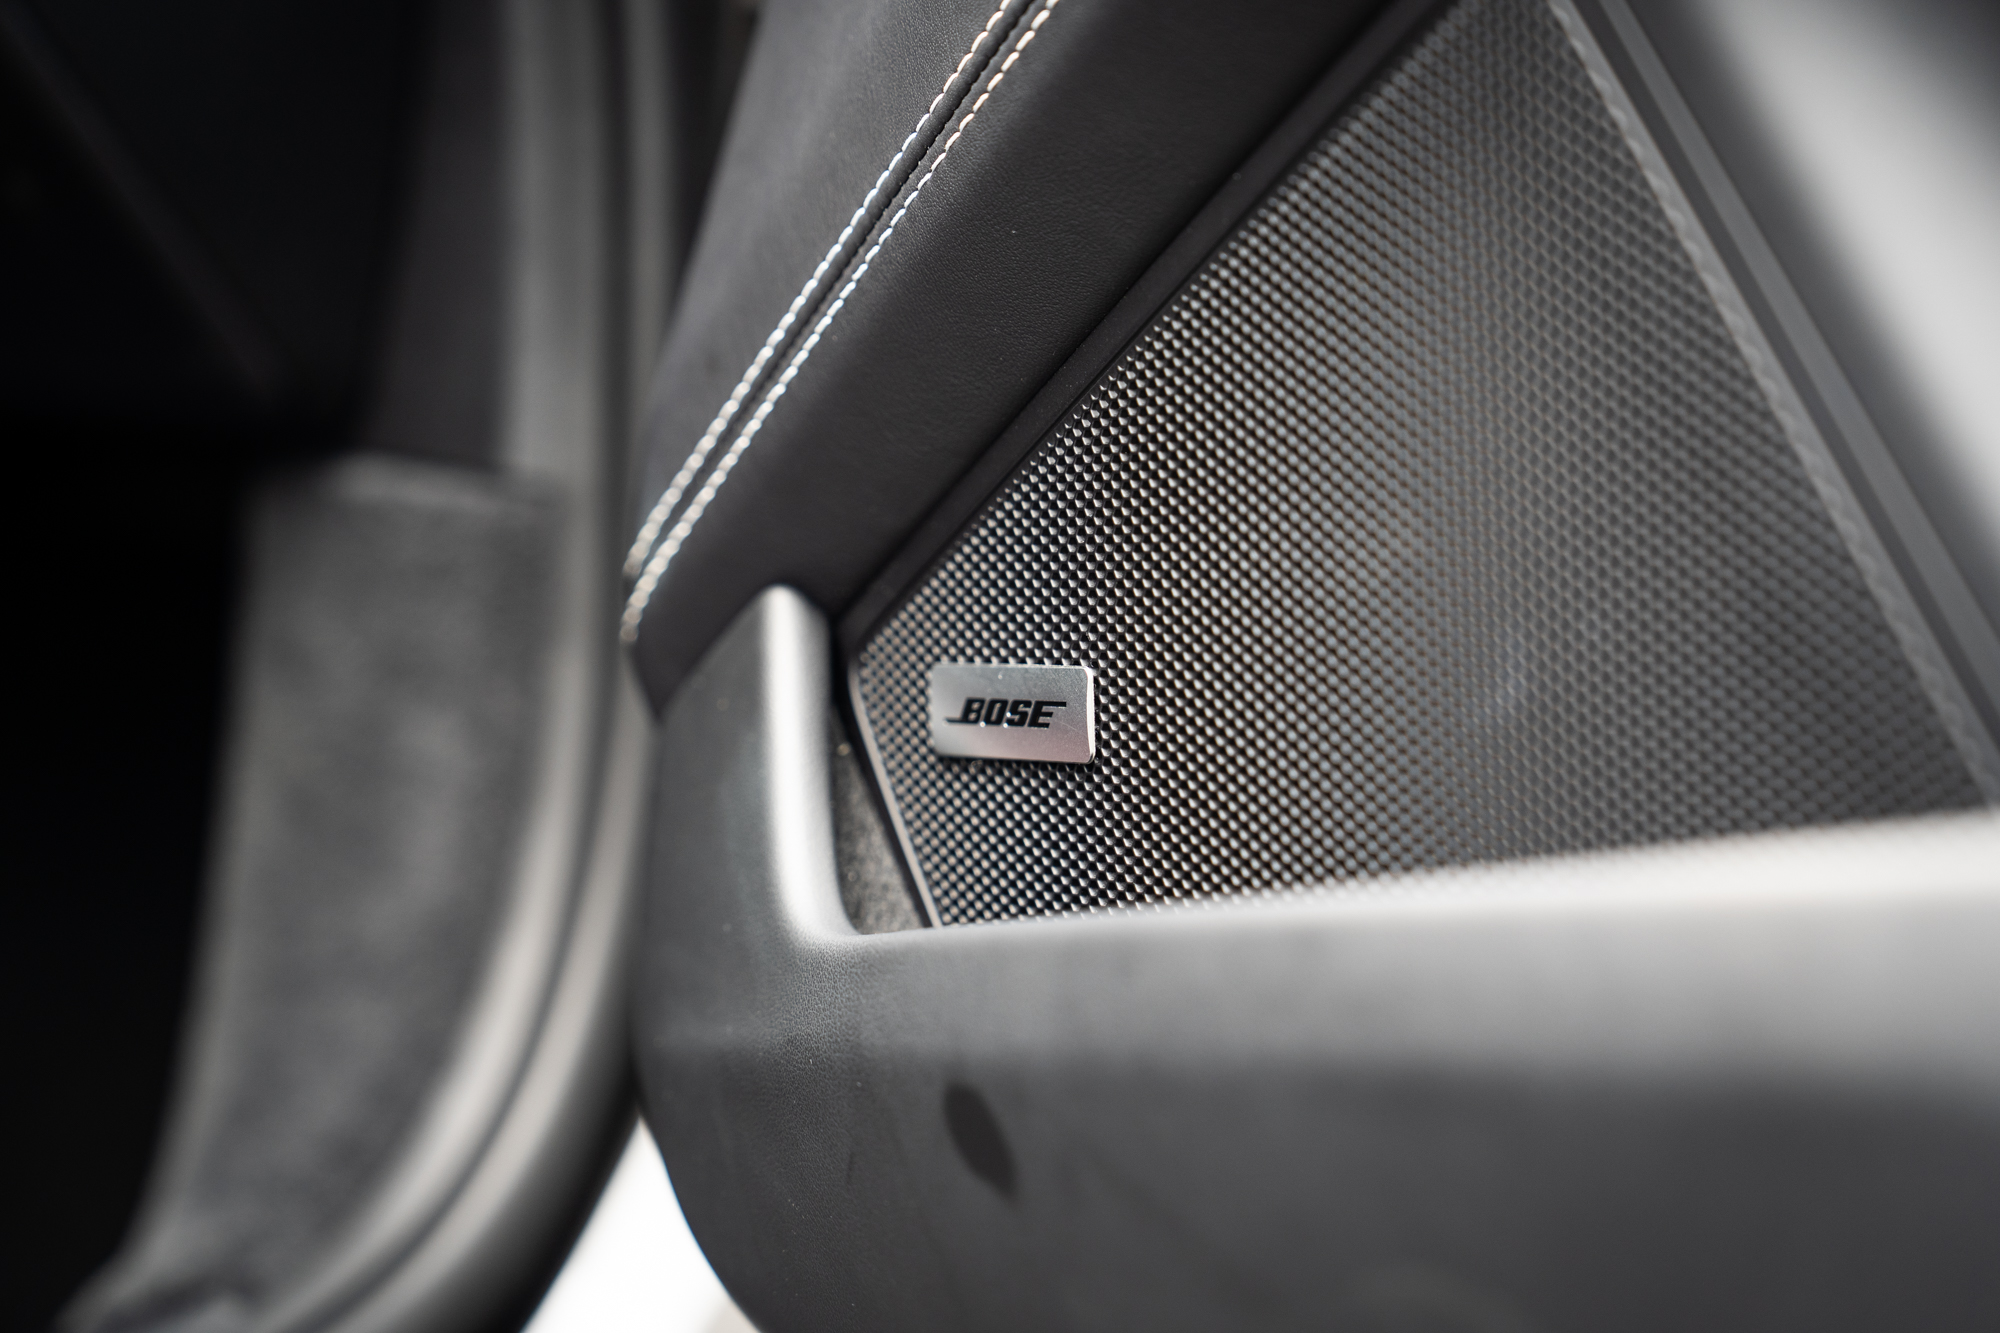 試駕車款選配要價新台幣94,700元的Bose音響系統。